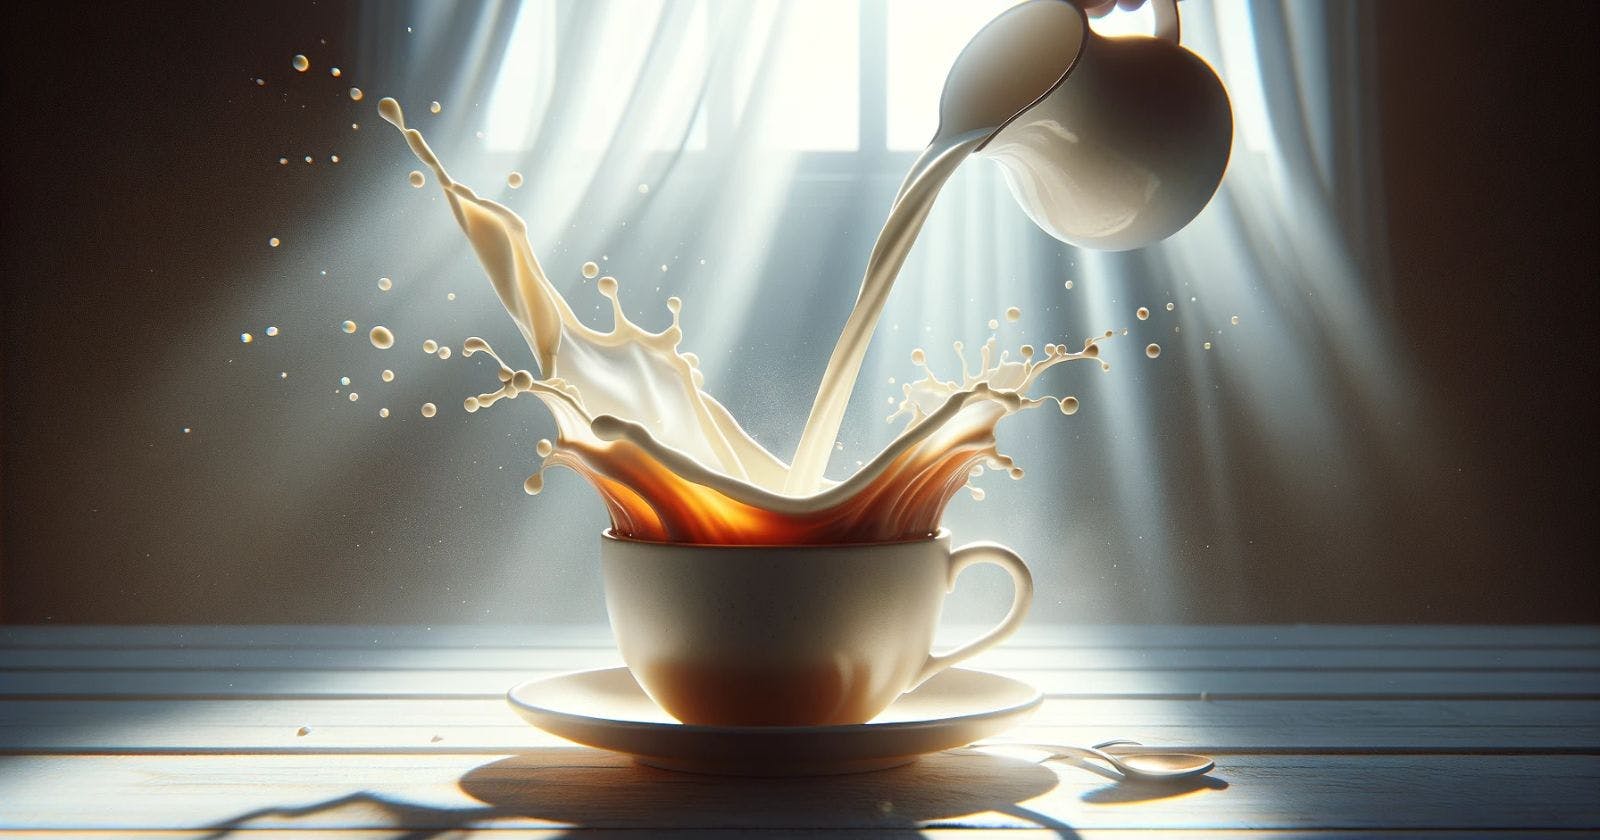 दूध की चाय पीने के नुकसान - मेरा अनुभव